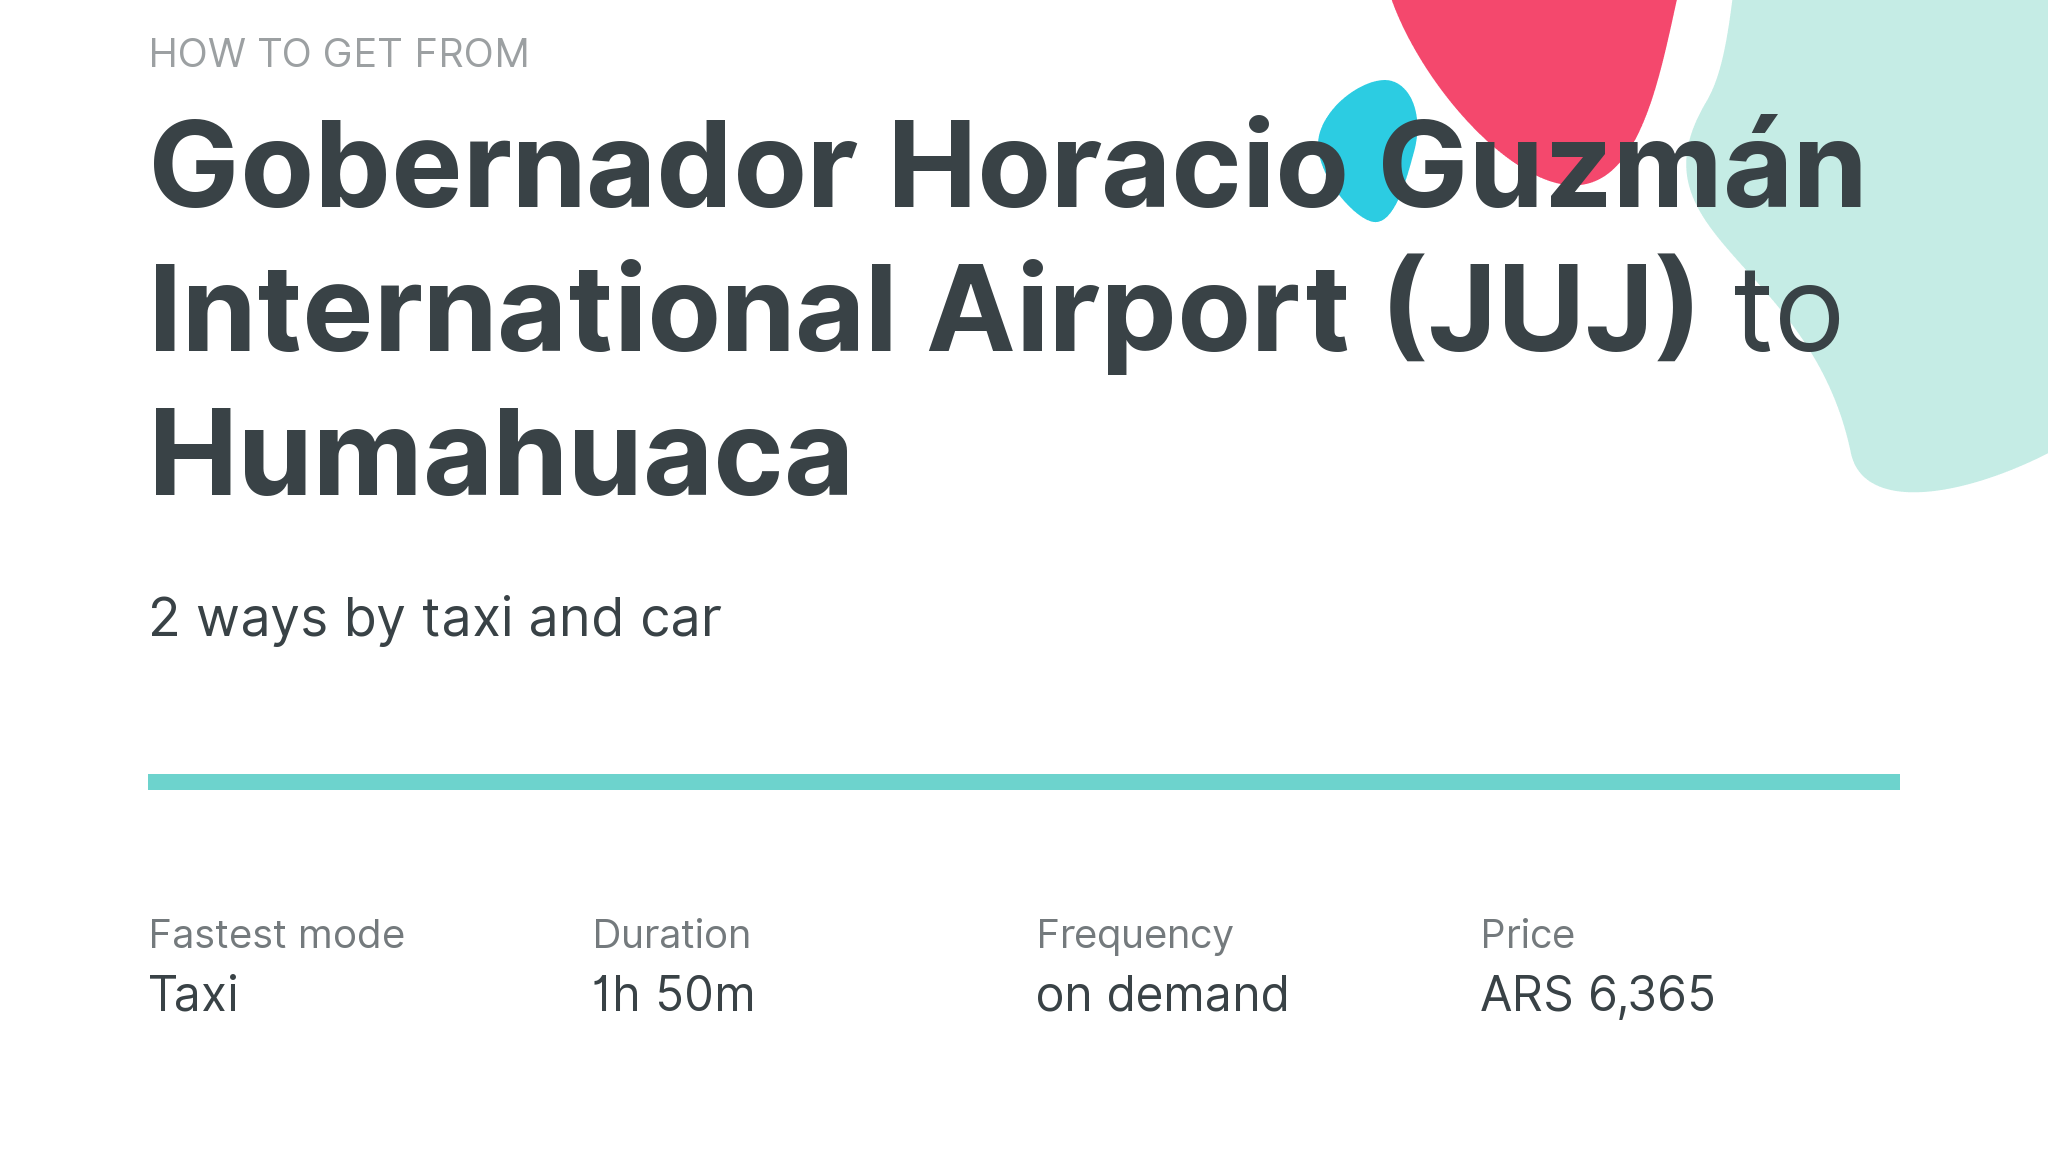 How do I get from Gobernador Horacio Guzmán International Airport (JUJ) to Humahuaca